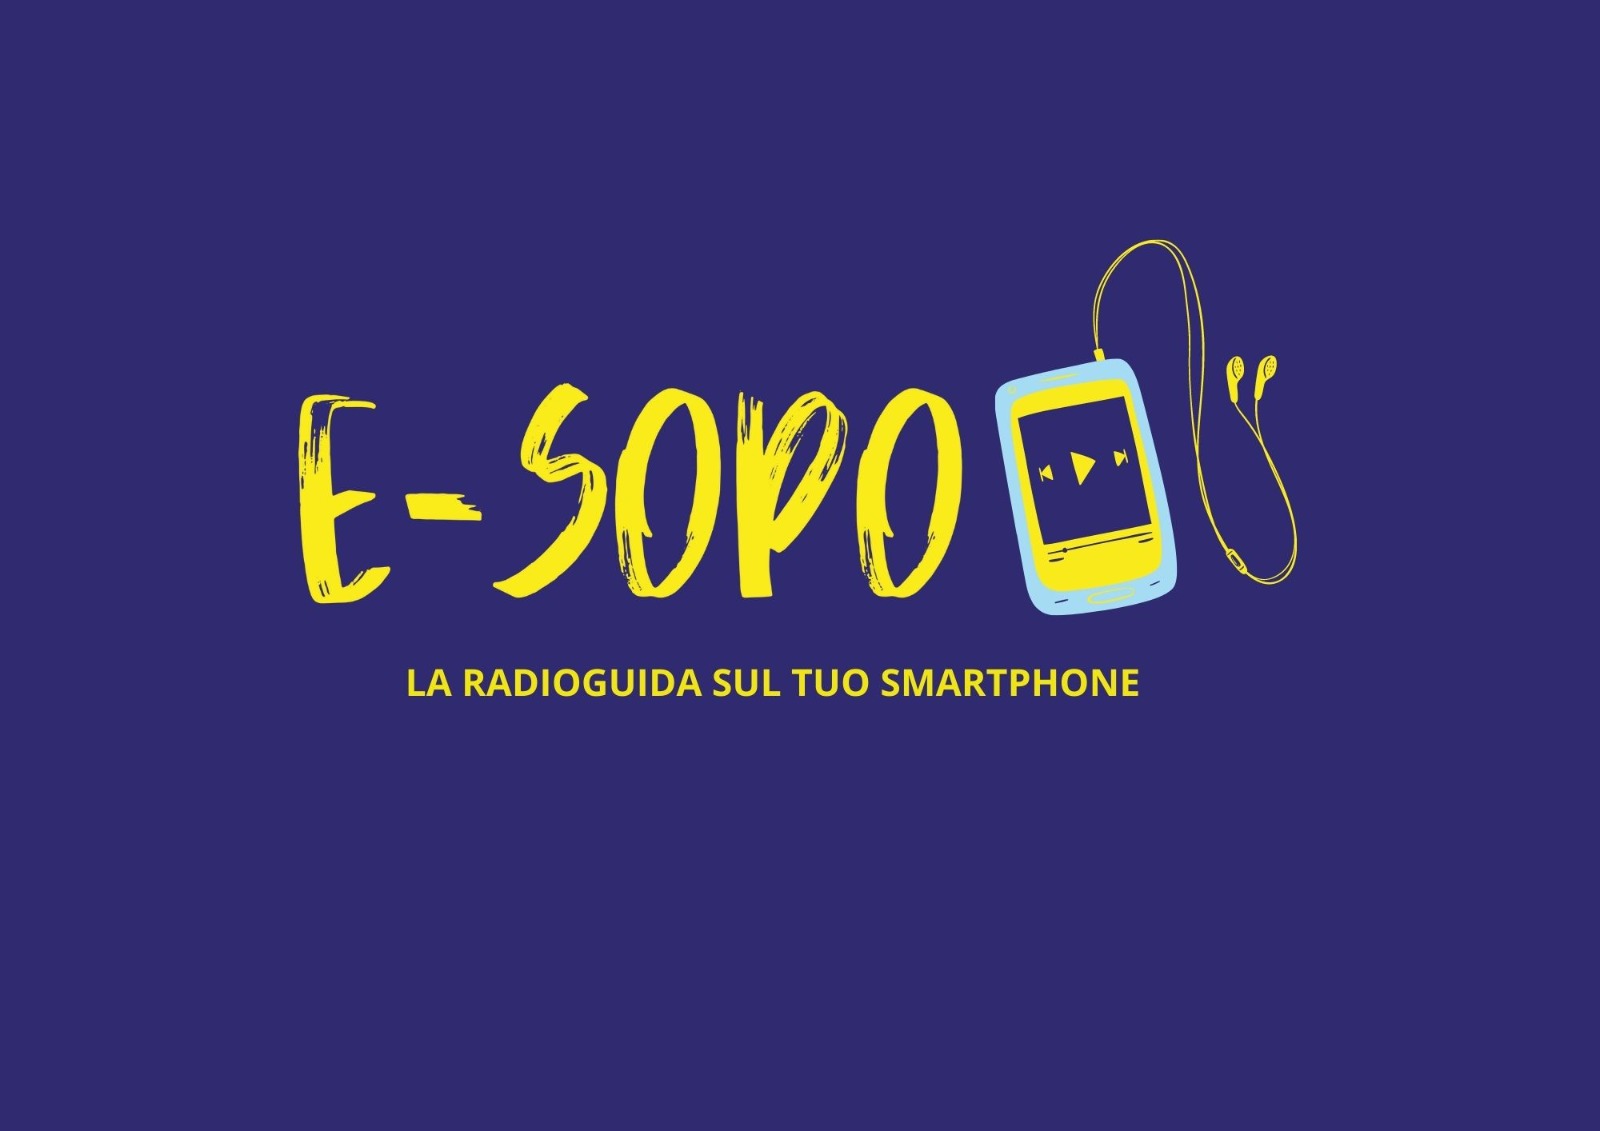 E-Sopo, il servizio di radio guida online del Mauto